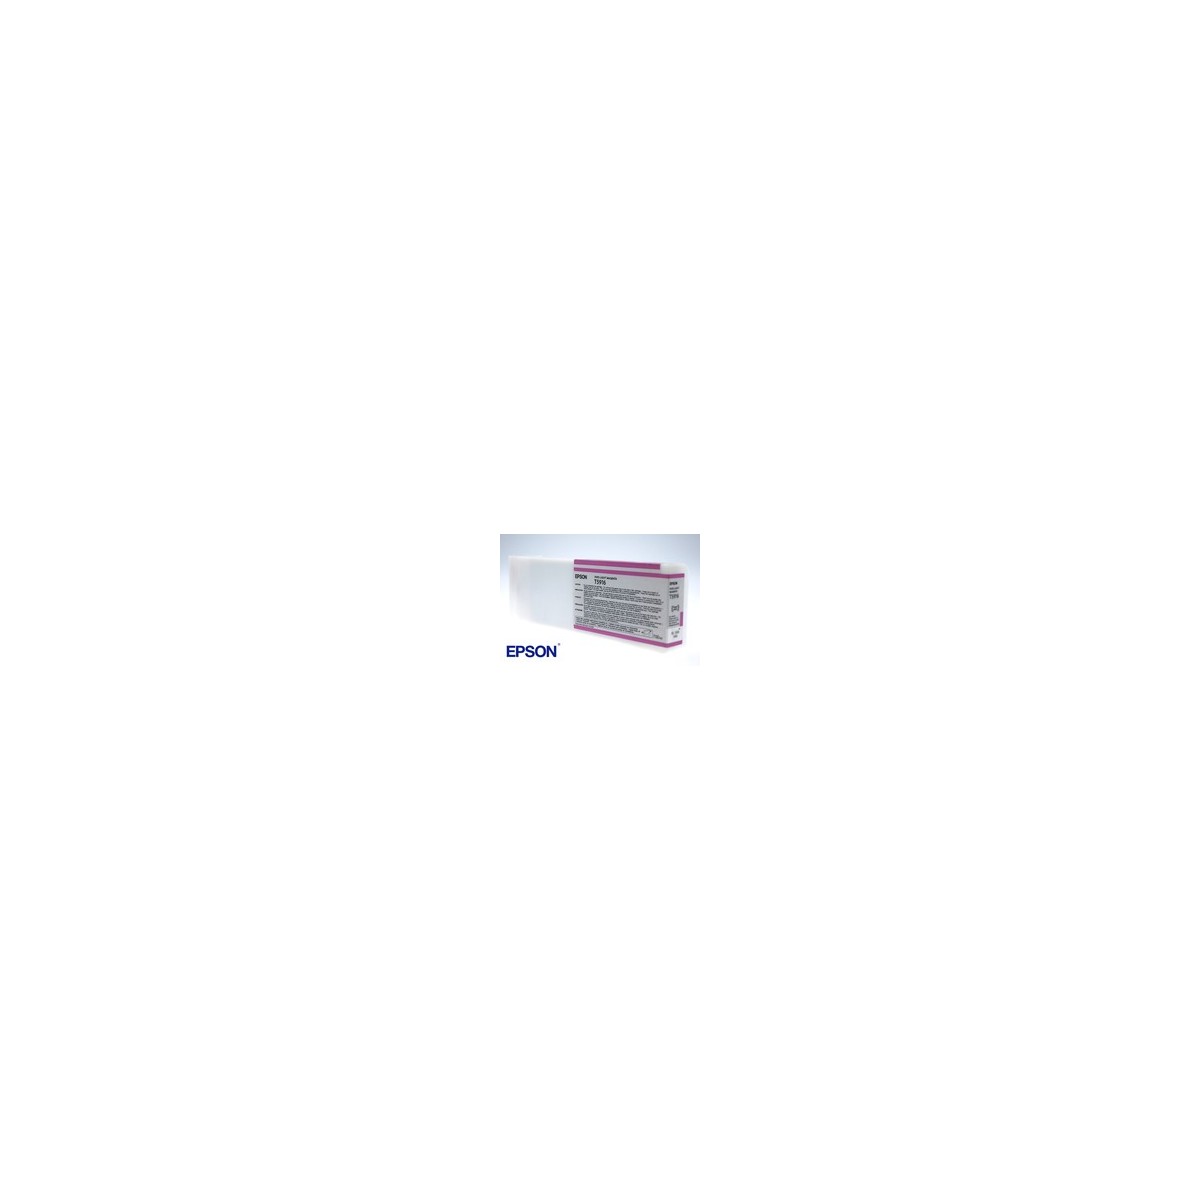 Epson Singlepack Vivid Light Magenta T591600 - Pigment-based ink - 700 ml - 1 pc(s)